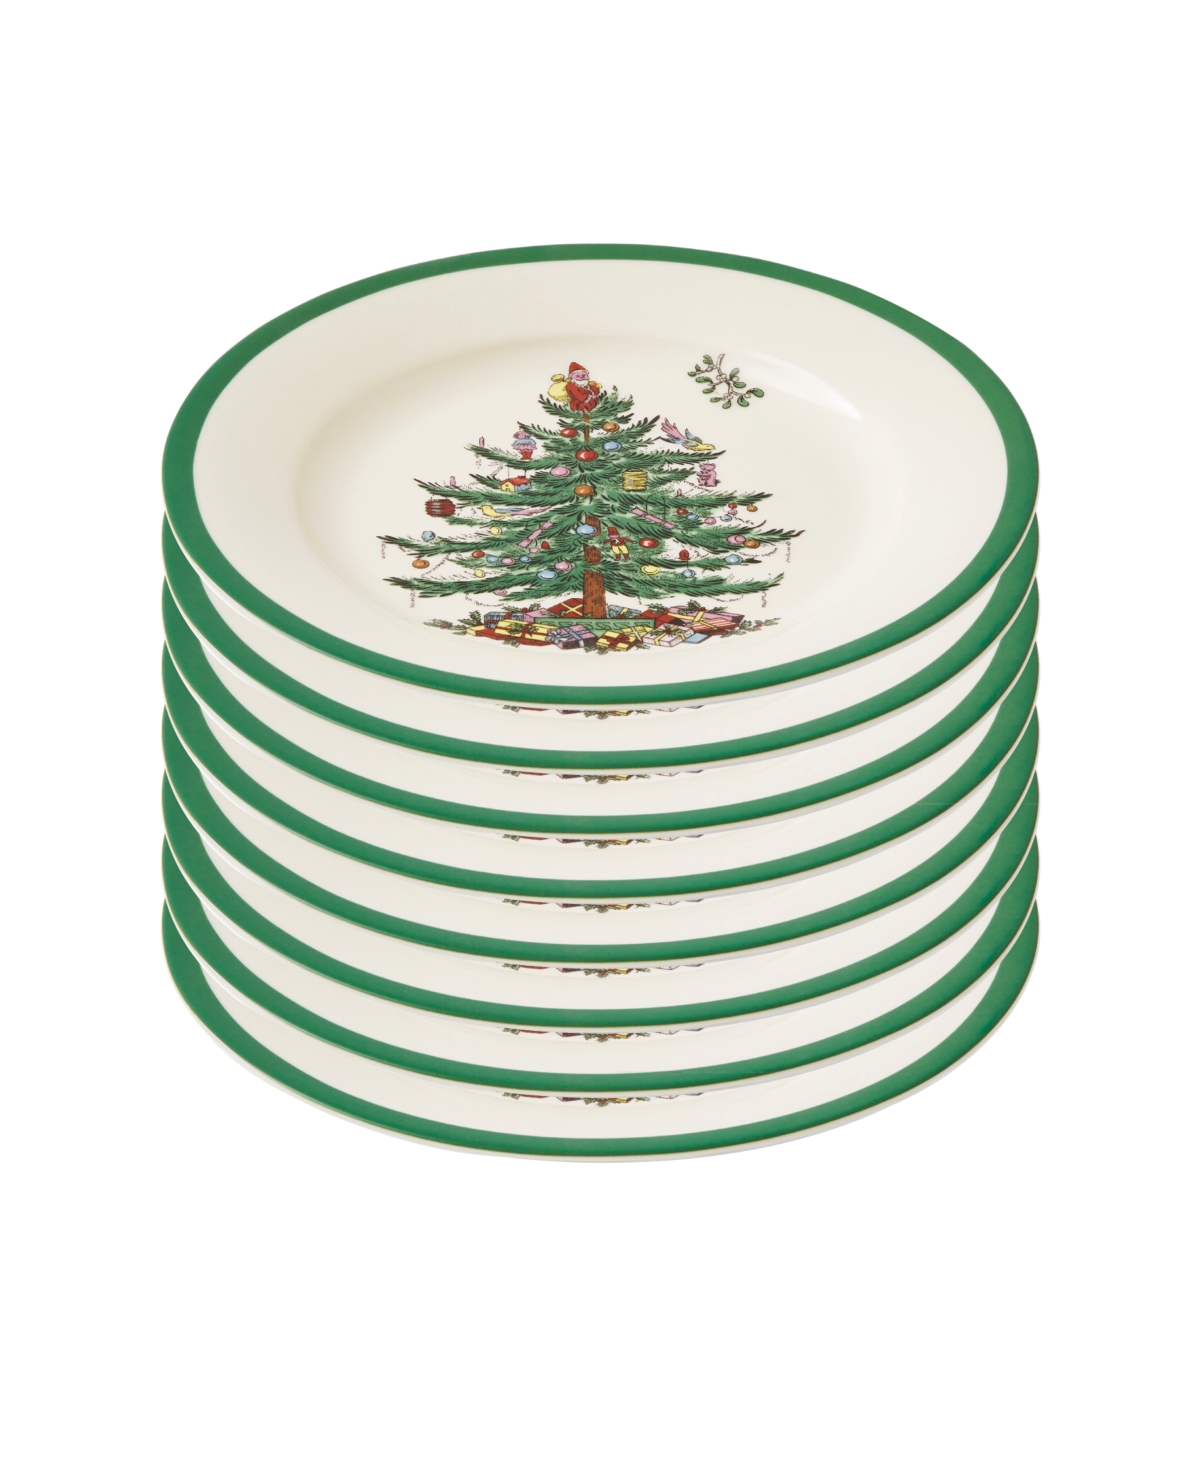 Christmas Tree Salad Plate Set of 8 - Green